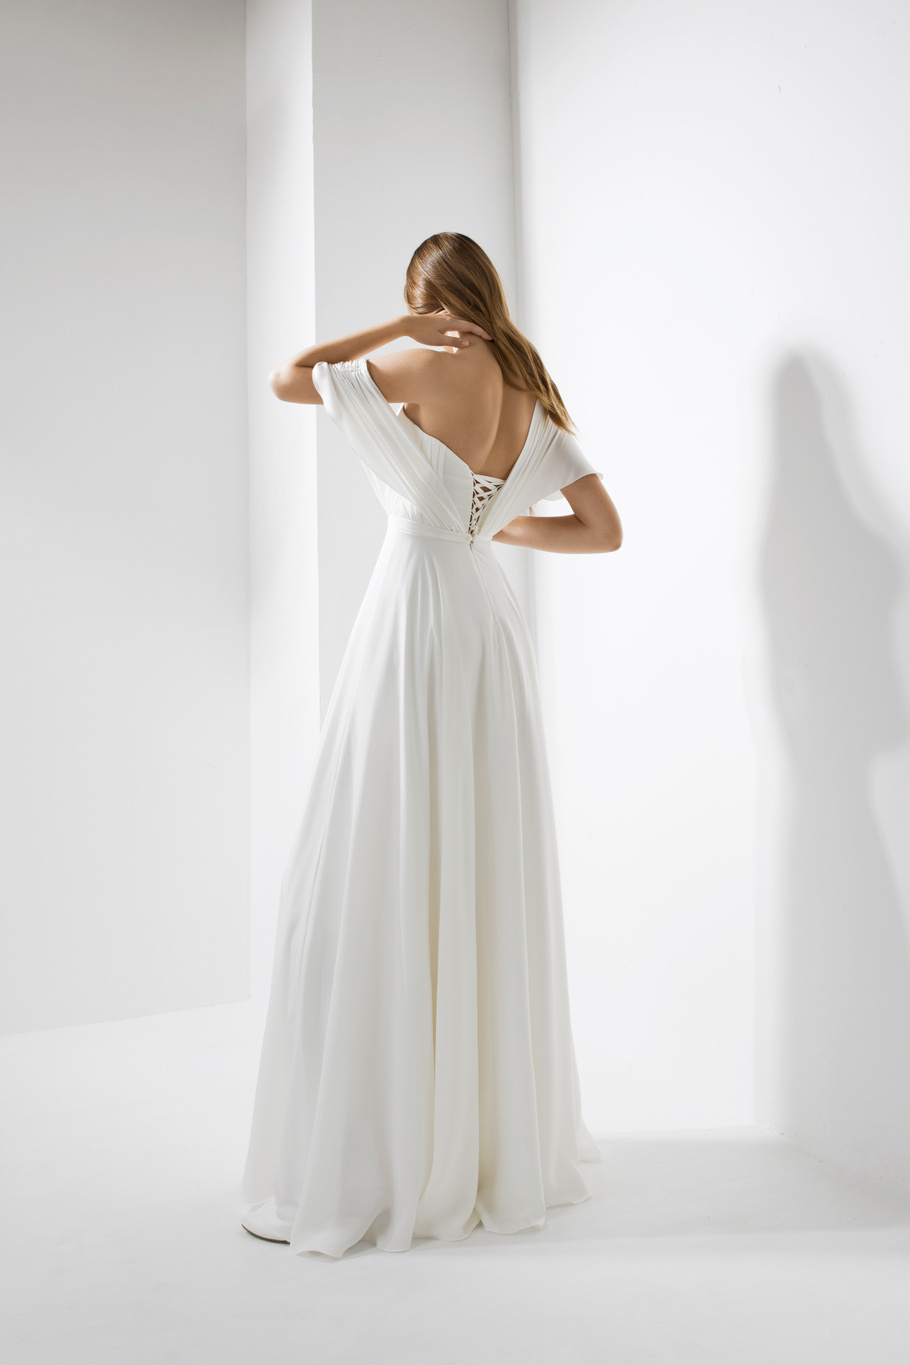 Купить свадебное платье «Дайна» Юнона из коллекции 2020 года в салоне «Мэри Трюфель»